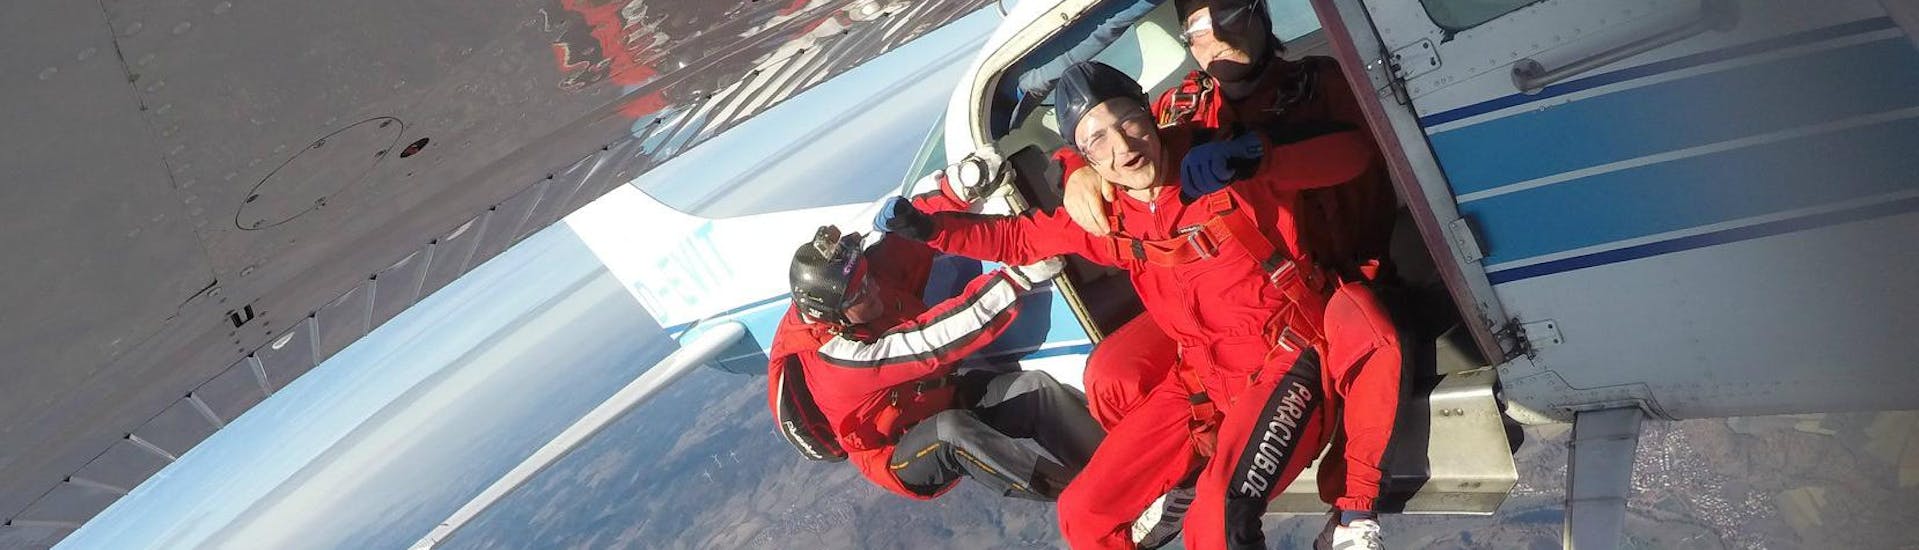 Tandem Skydive aus 4000m - Schwäbisch Hall mit Blue Sky Adventures Schwäbisch Hall - Hero image